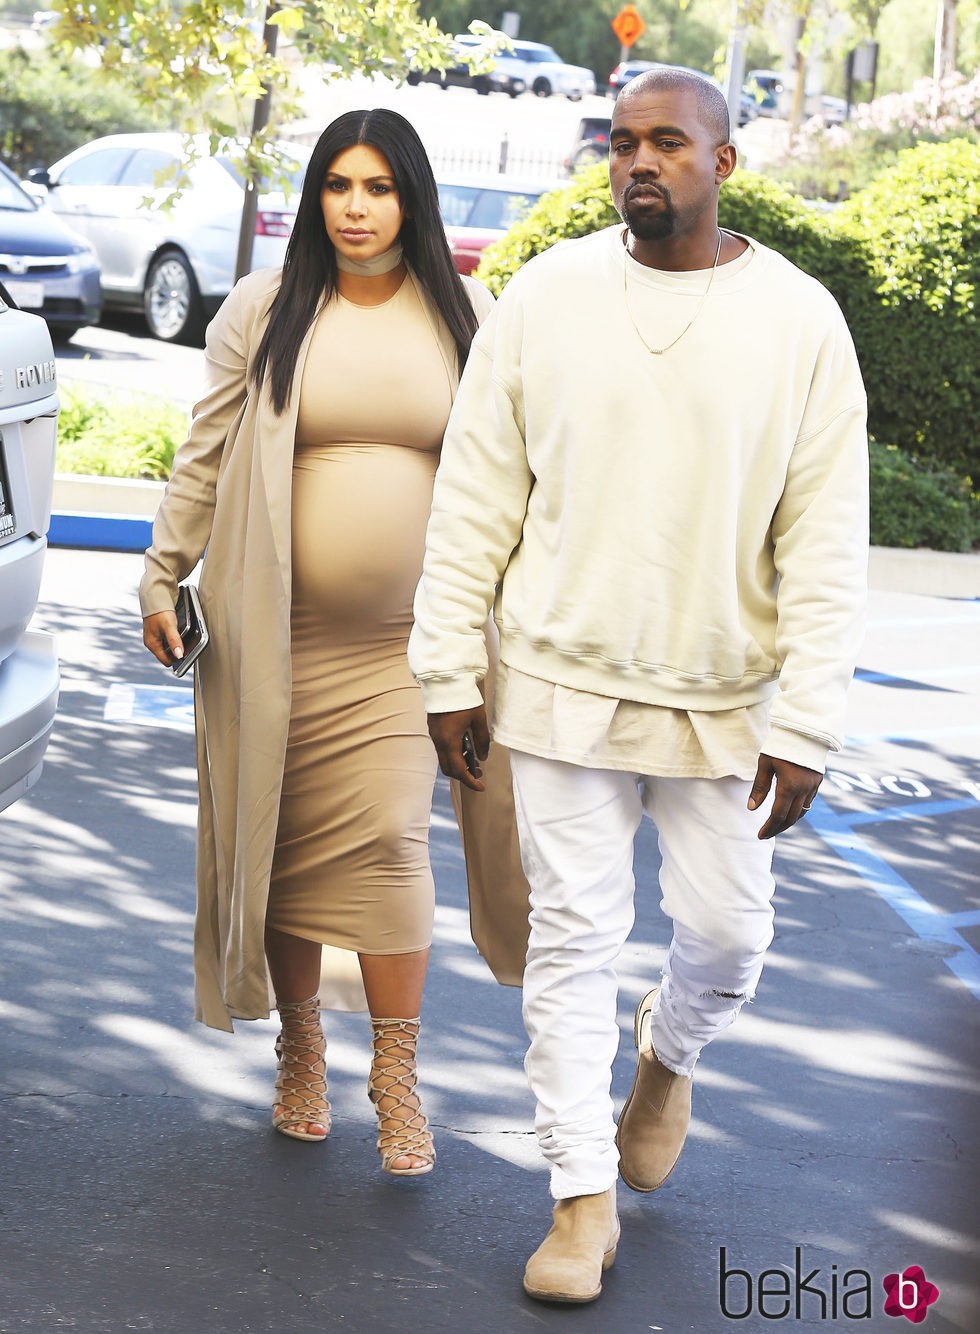 Kanye West y Kim Kardashian a la llegada de la fiesta de aniversario de la televisiva